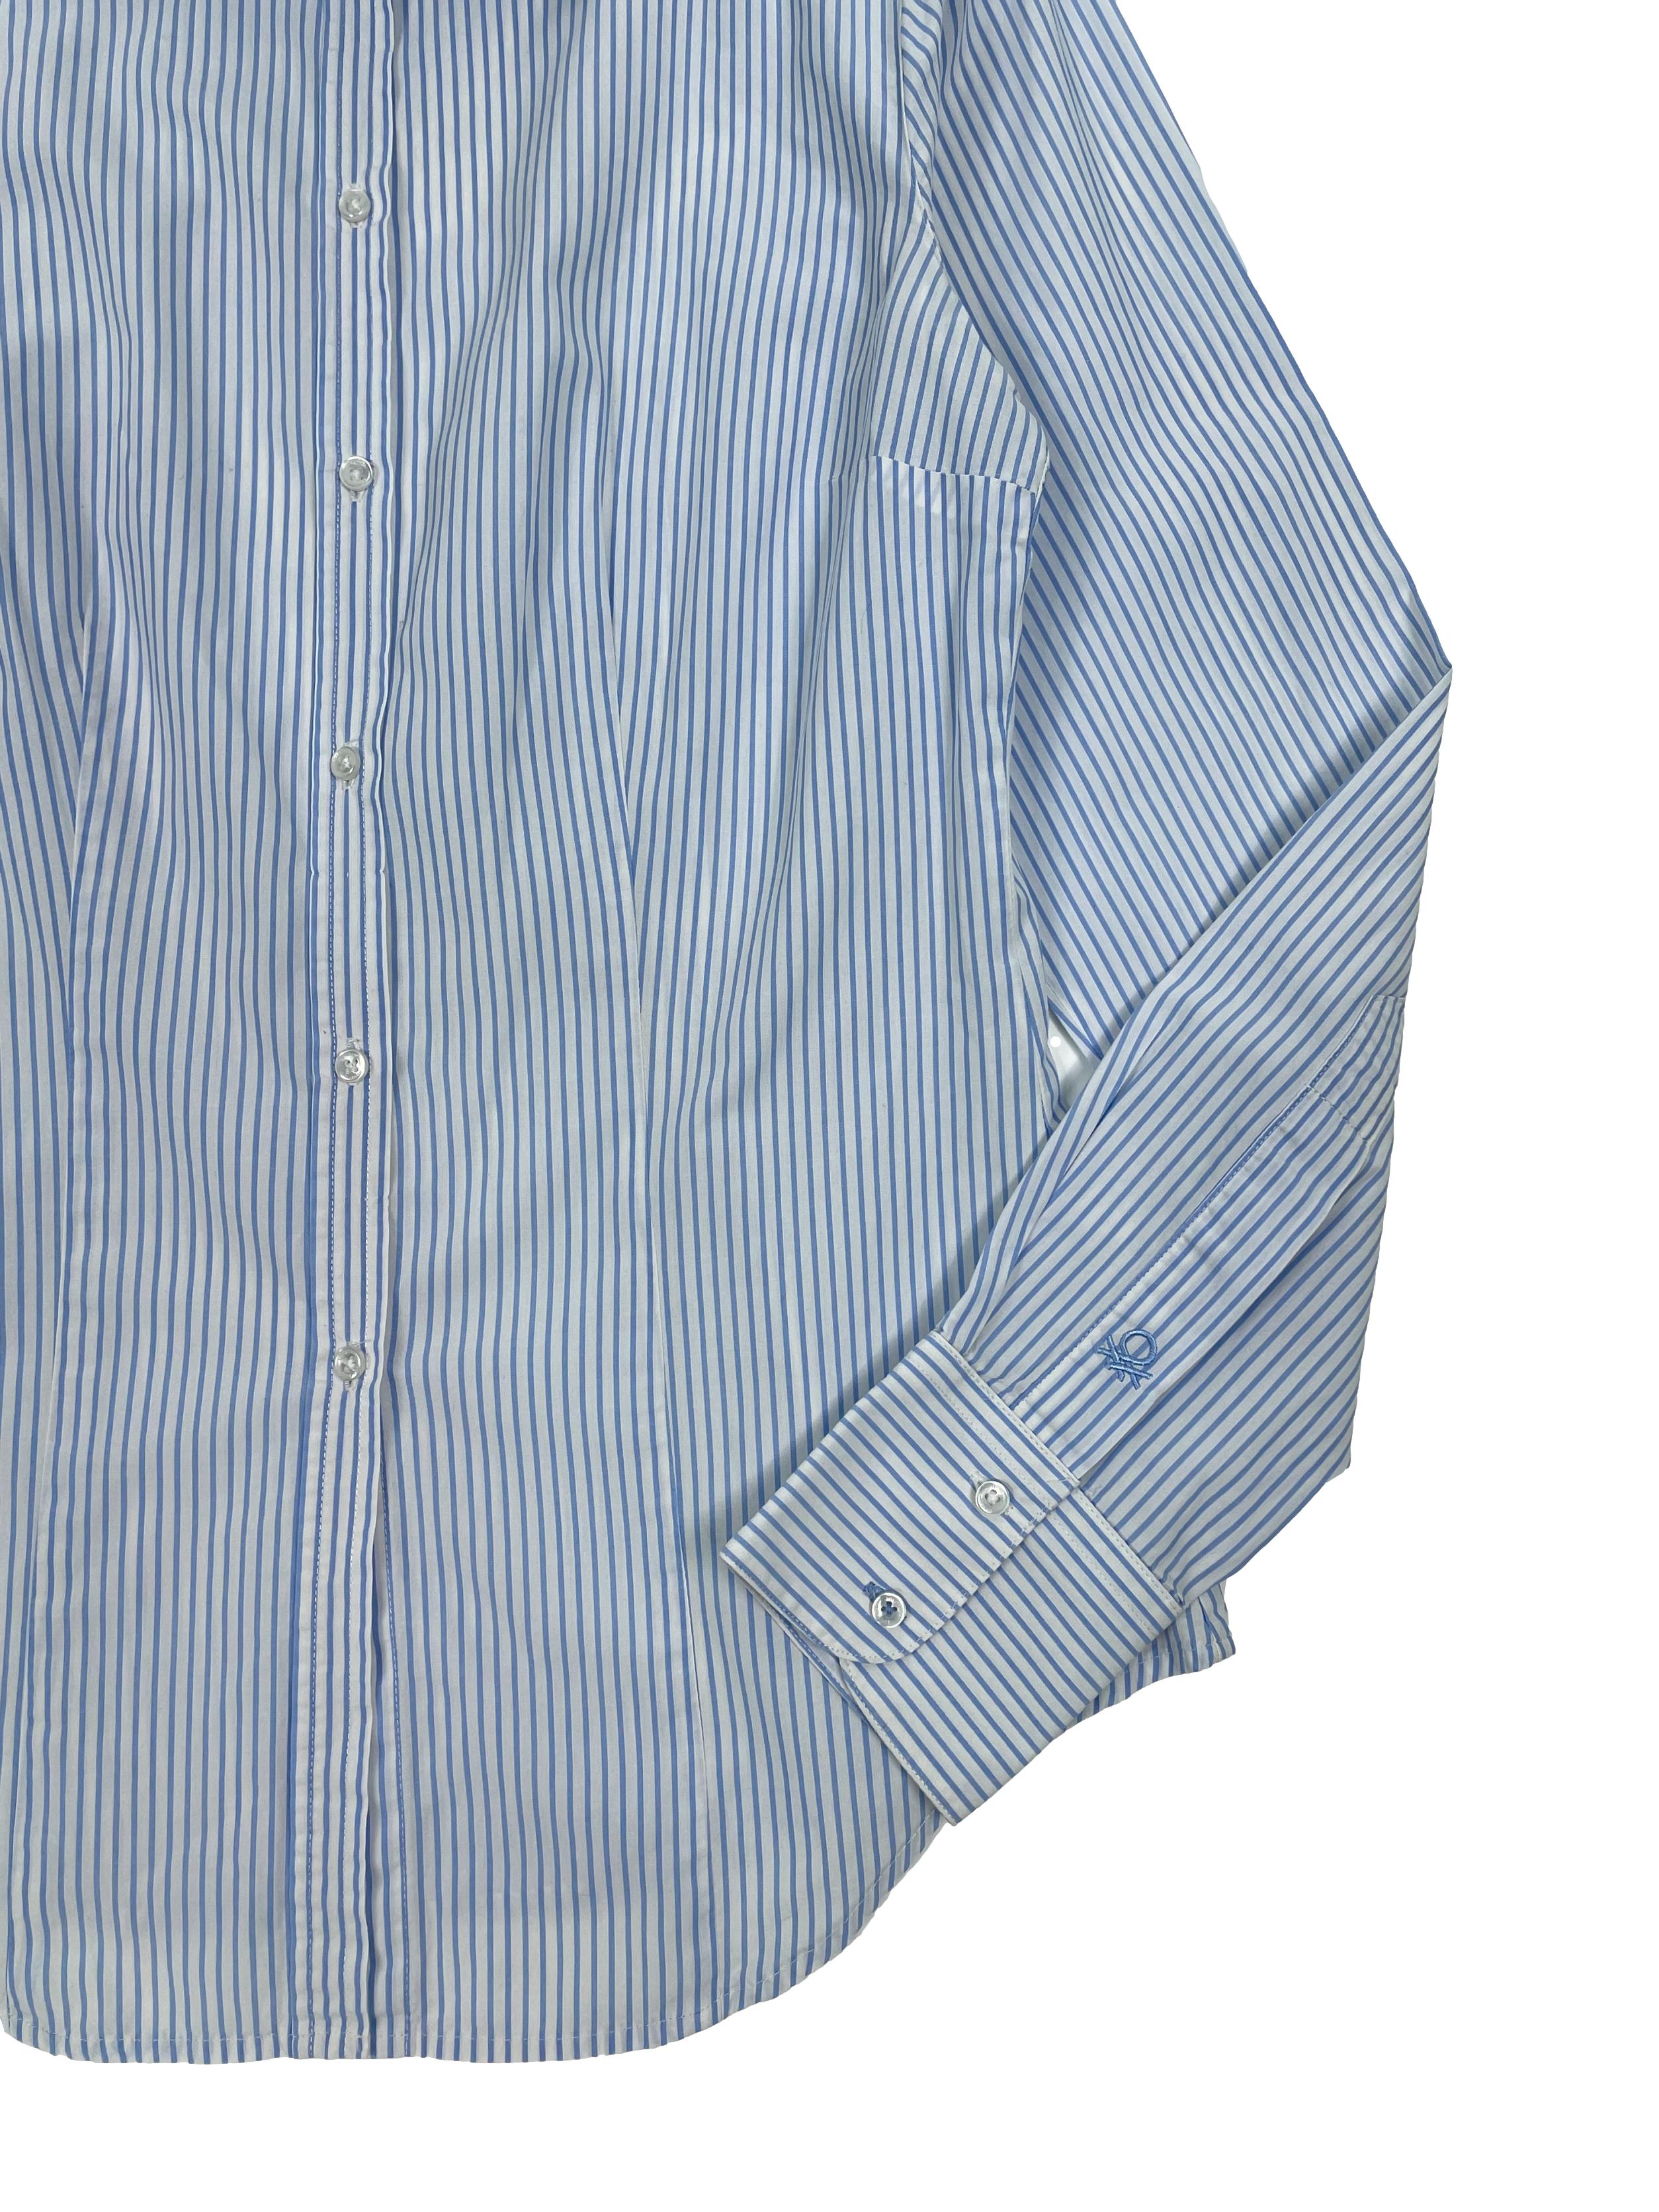  Blusa Benetton a rayas en blanco y celeste,  cuello camisero, pinzas frontales y posteriores, mangas largas y botón de repuesto.Busto 90cm, Largo 55cm.